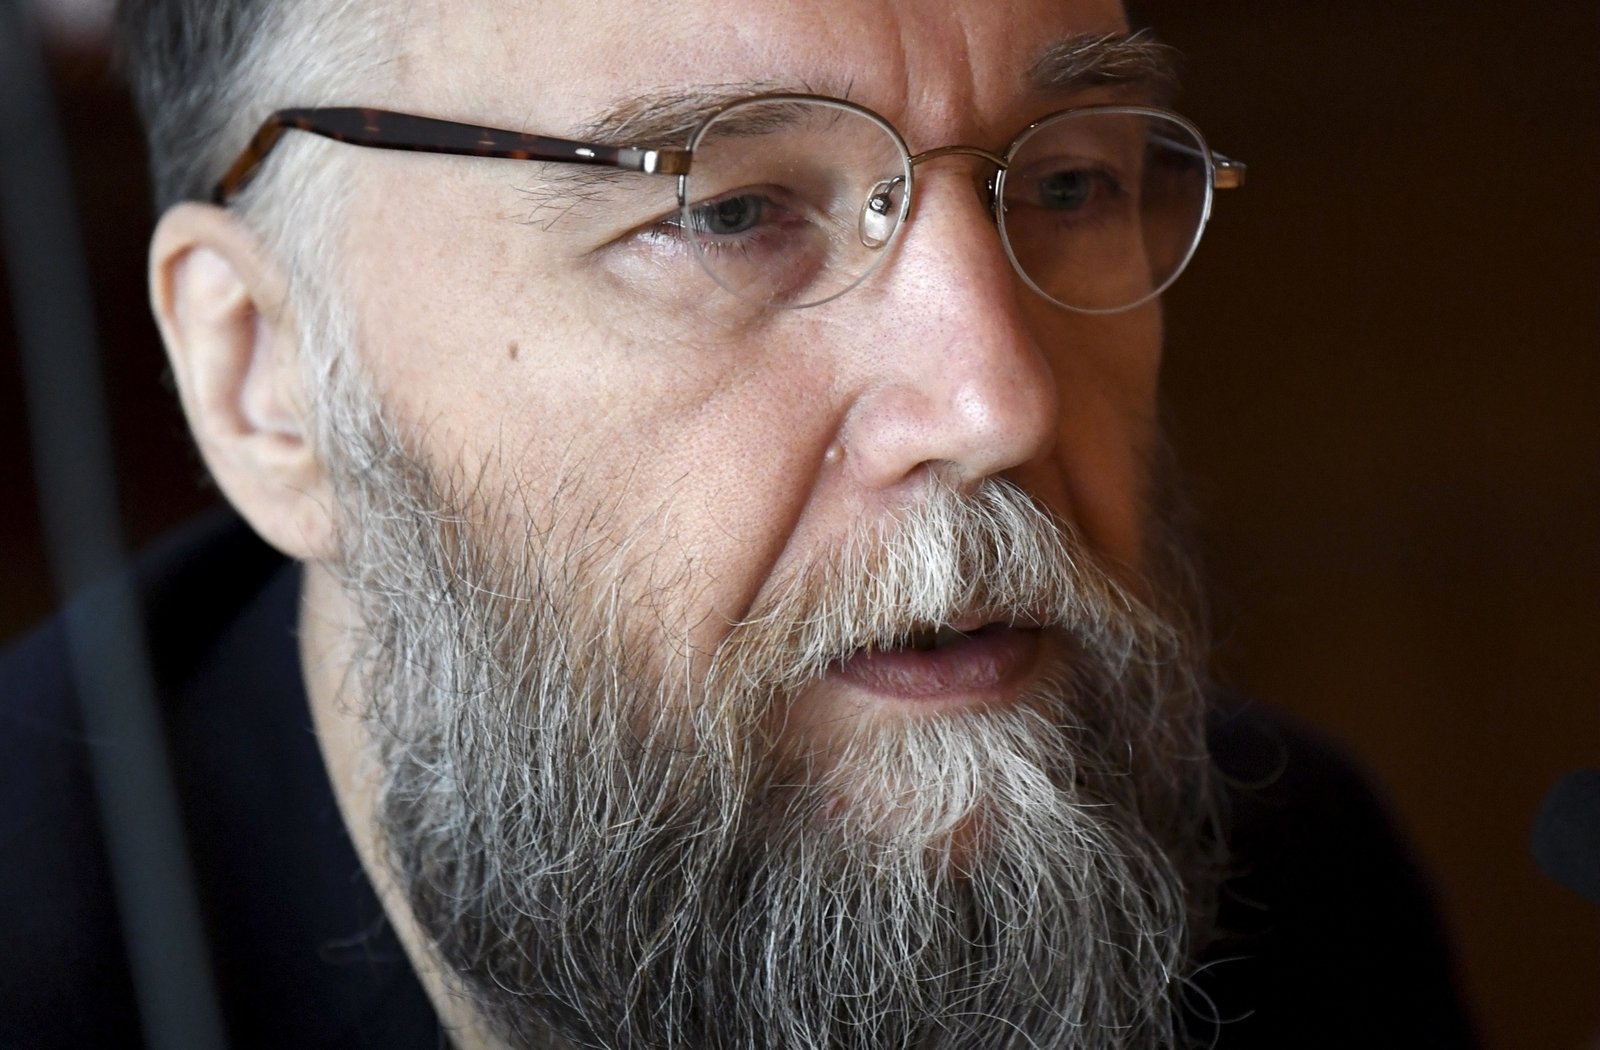 Alexander Dugin, a prominent ally of Russian President Vladimir Putin